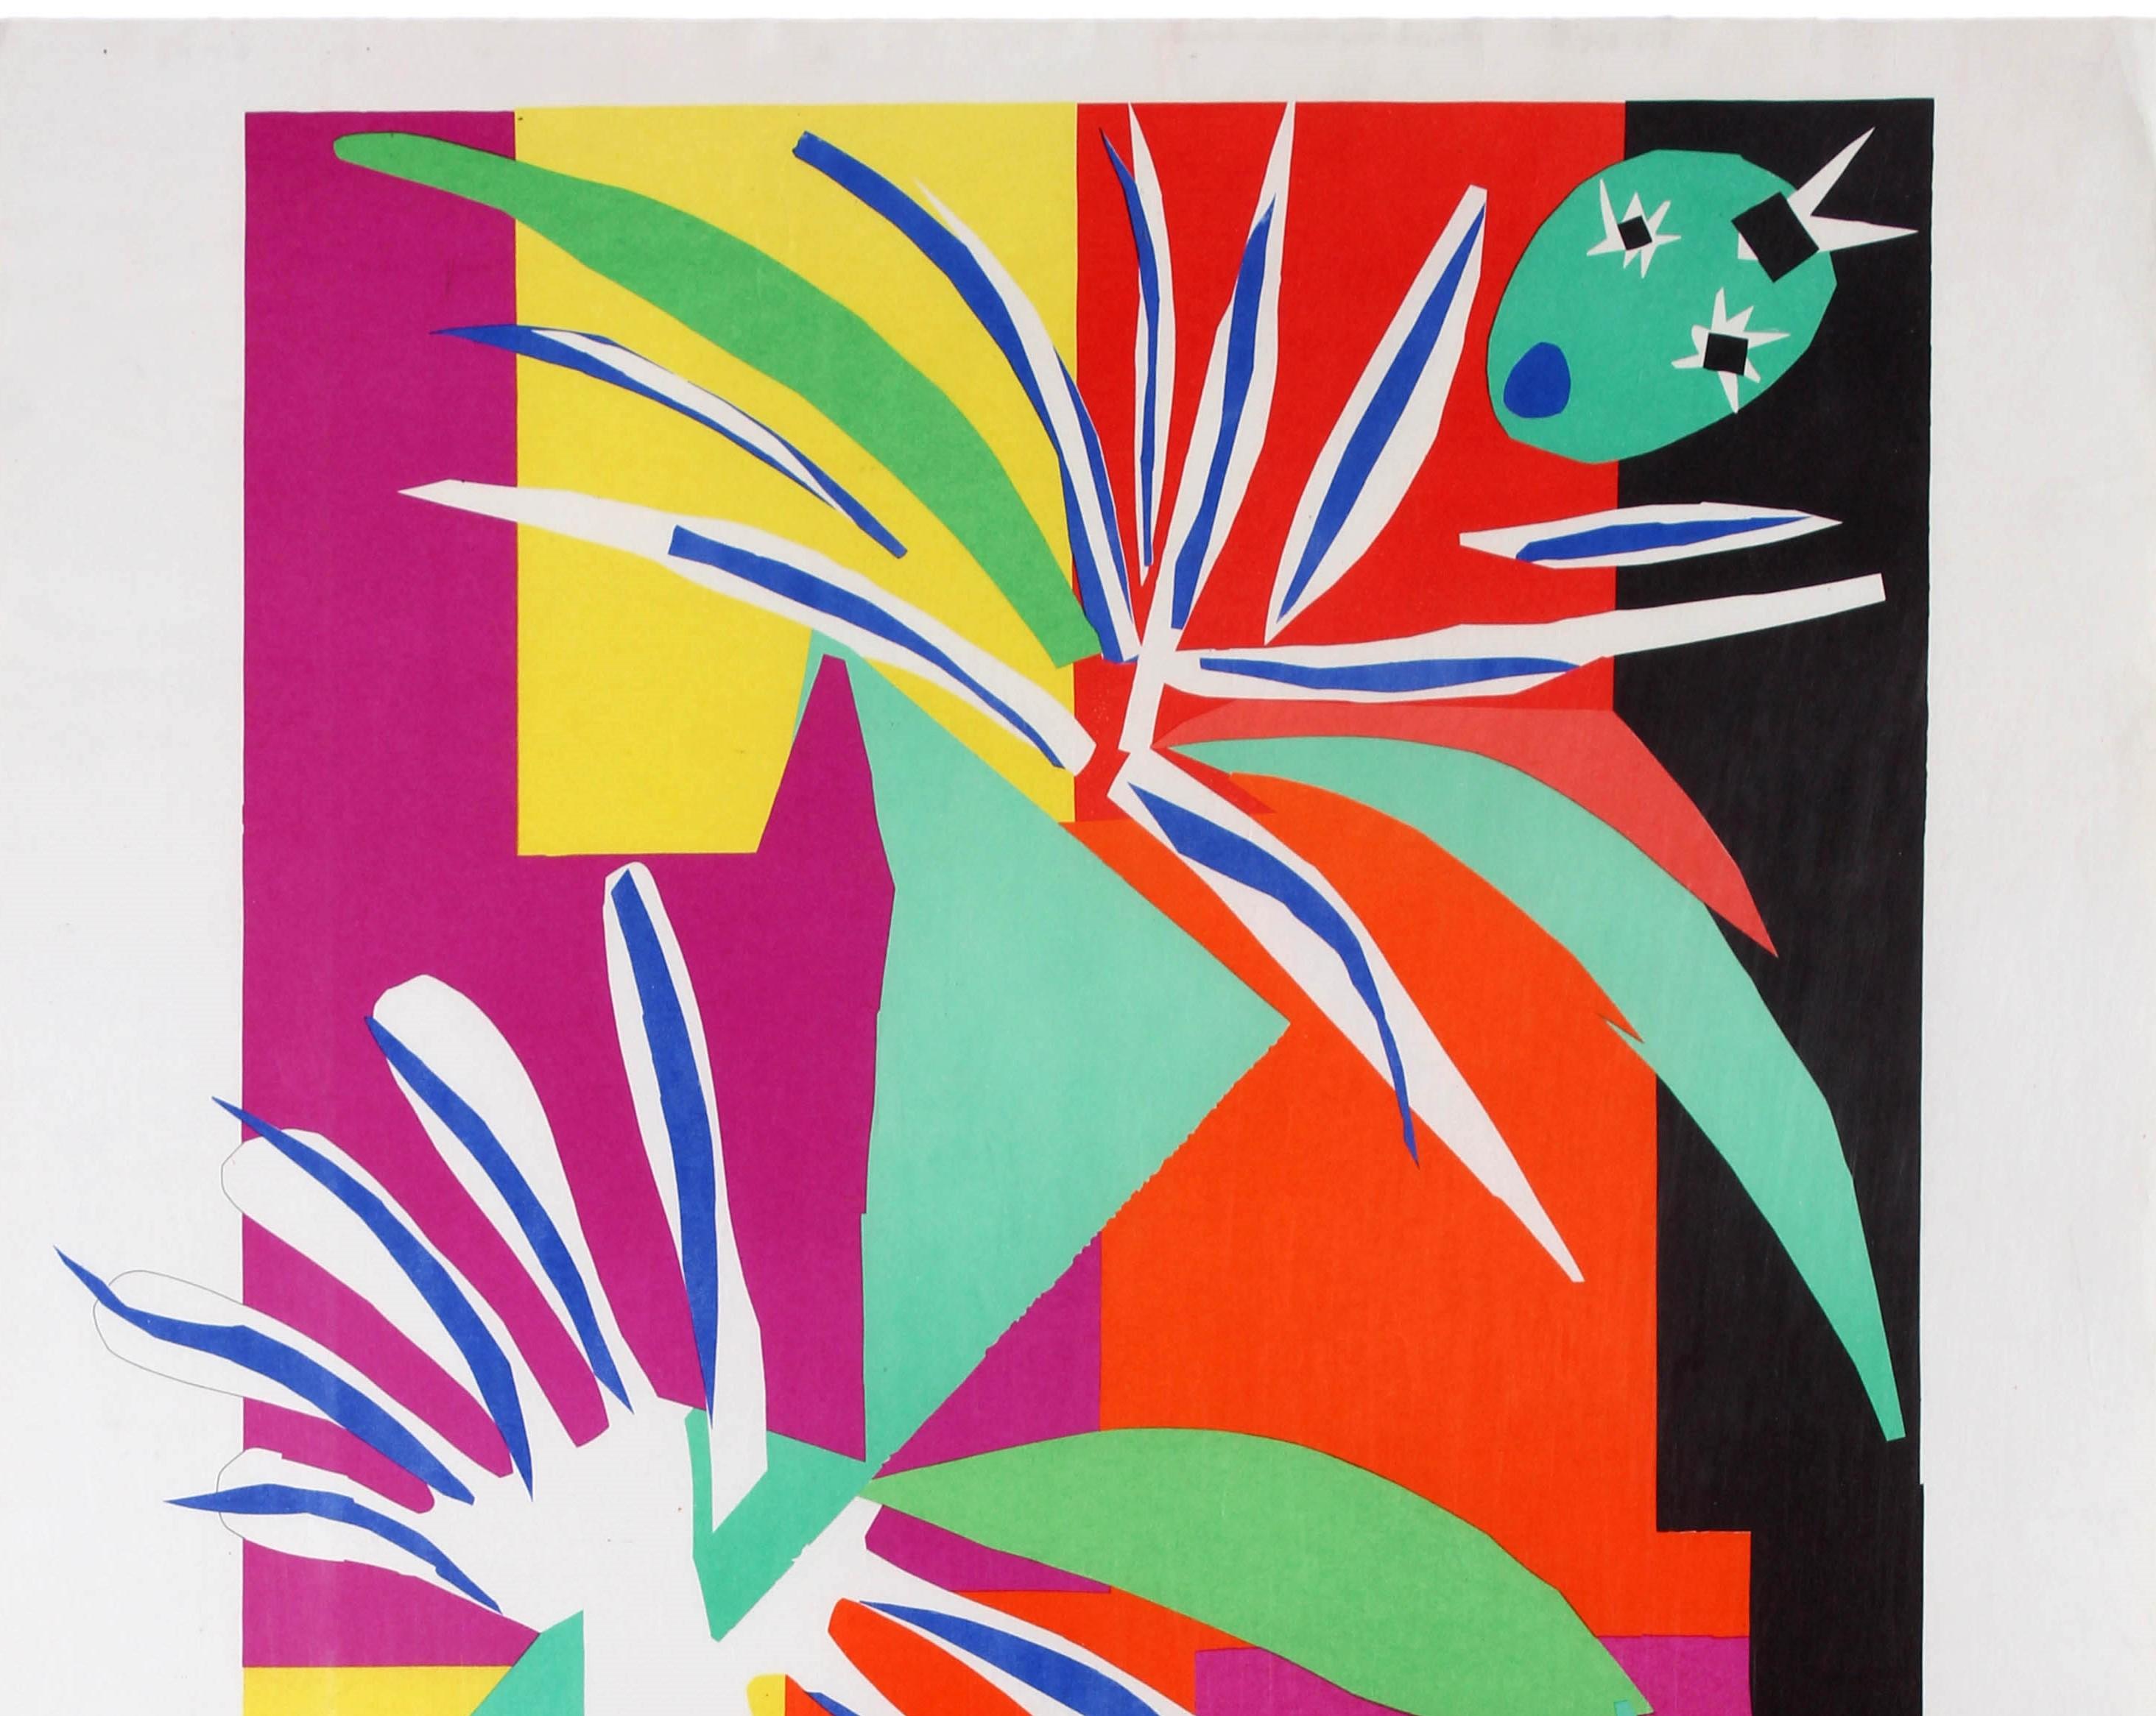 Affiche publicitaire originale publiée par et pour le gouvernement français et le Comité général du tourisme afin de promouvoir la ville de Nice sur la Côte d'Azur et le Musée Matisse (ouvert en 1963). Elle présente une image colorée du célèbre